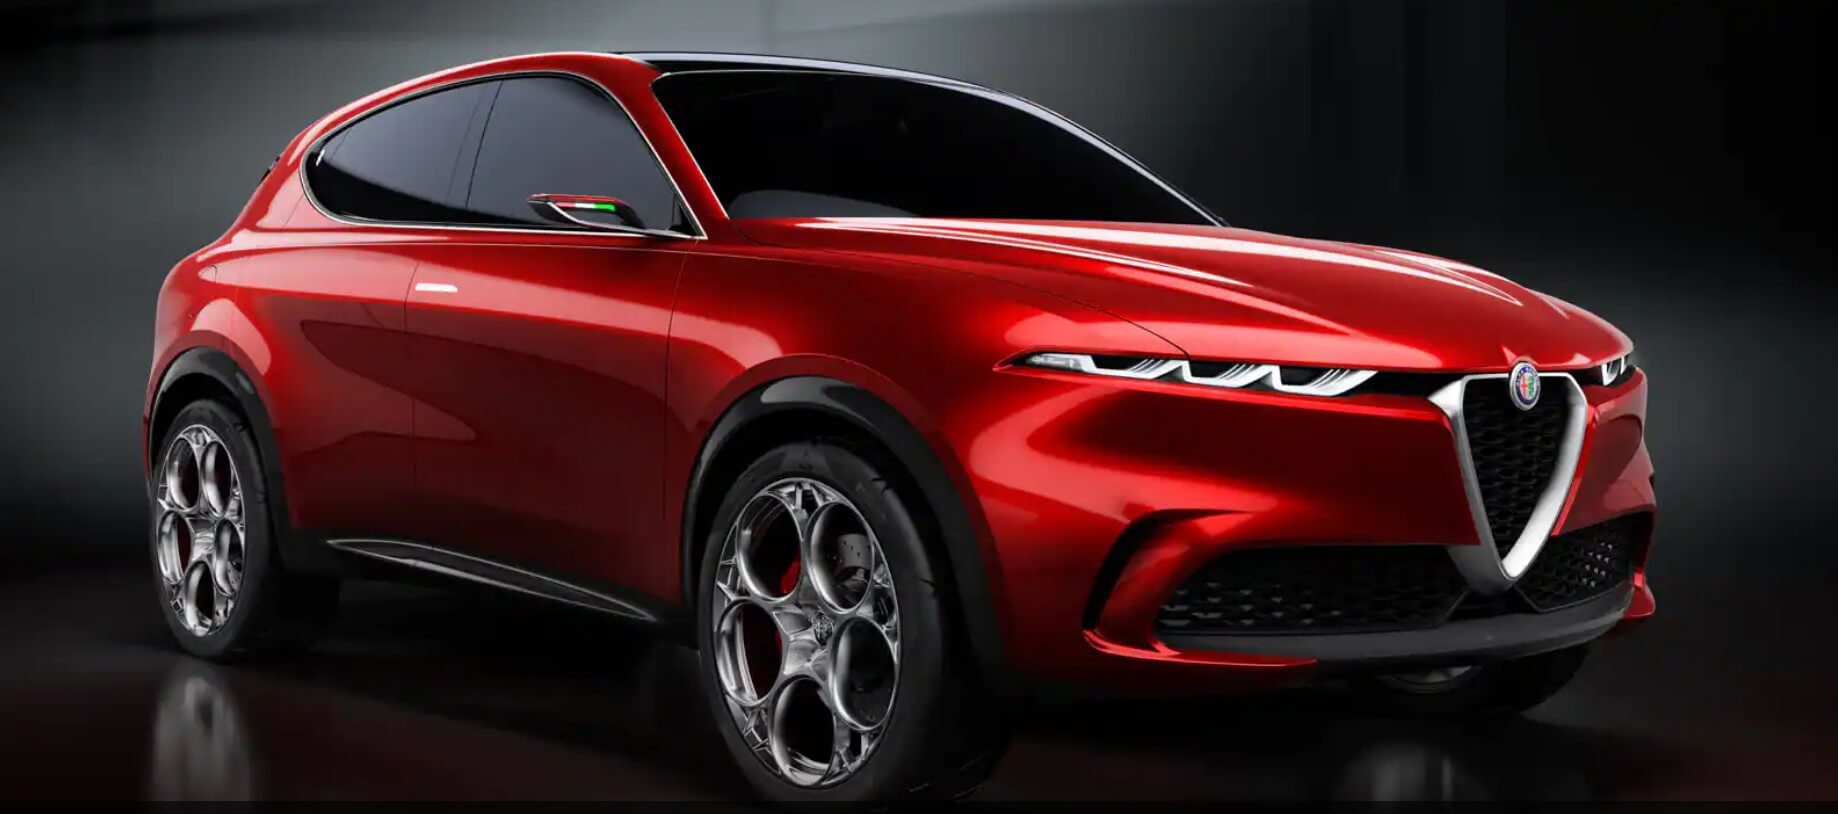 アルファ ロメオは、BMW iX、メルセデス EQS に匹敵する EV SUV の製造を計画しています。